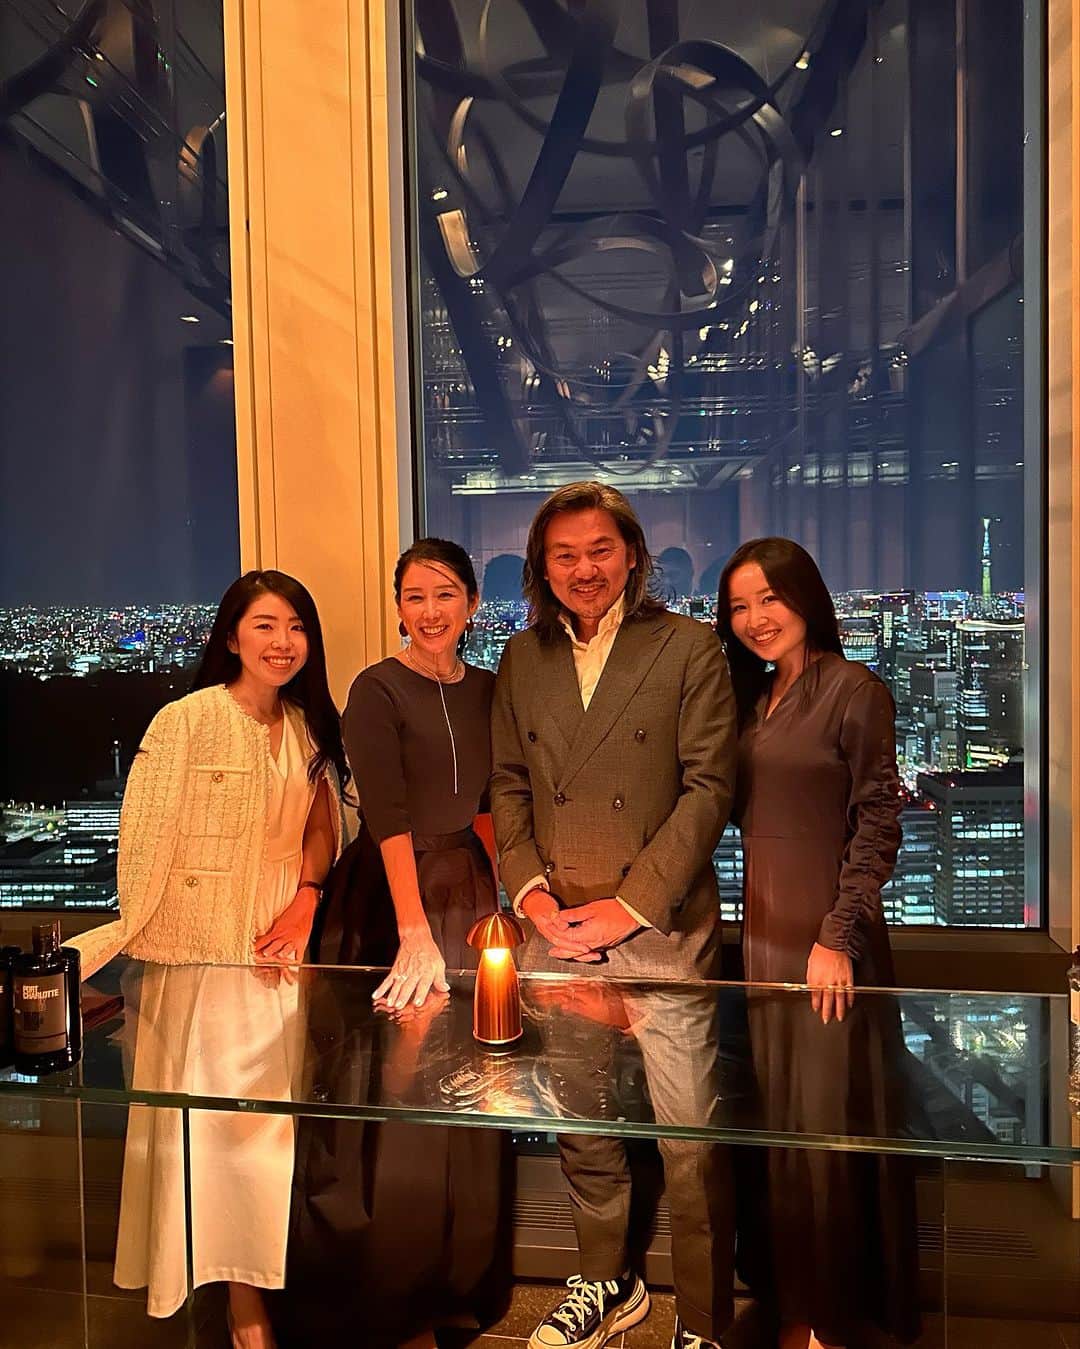 紙本真琴のインスタグラム：「アンダーズ 東京51階　ザ タヴァン グリル&ラウンジでは 10月、世界のグルメが注目するシェフをゲストに招き開催される期間限定の  スペシャルポップアップイベント 『ザ タヴァン シークレット キッチン』 を開催しているとのことで、ご招待頂きました✨  アムステルダムの高級ブティックホテルのミシュラン2つ星を獲得したフレンチレストランで、エグゼクティブシェフとして16年間  世界のグルメ通を魅了してきたデニス・カイパース氏をゲストに迎え  プライベートルームのオープンキッチンで上質な特別ディナーコースを堪能🍽️  アンダーズ 東京オリジナルの1日14名限定一期一会のグルメ体験  普段一緒に食事などできない素晴らしい方々との素敵な出逢いもあり、  アンダーズらしいユニークで刺激的なエクスペリエンスを楽しんだ一夜でした  デニス・カイパース氏の6品のスペシャルコースメニューに  ぴったり合ったワインペアリング🍷の内容やプライベートルーム  キッチンテーブルでの様子は、また次の投稿で🤍  『ザ タヴァン シークレット キッチン』〜カクテルペアリング〜 10月3日(火)〜10月28日(土)まで提供 (※上記期間内の18日限定イベント。詳しくはホームページを参照。)  Thanks @andaztokyo  @thetaverntokyo  @denniskuipers_chef  @cutie.626.rina2018  @shiggytokyo  @kanaotter   #PR #アンダーズ東京 #虎ノ門ヒルズ #虎ノ門グルメ #虎ノ門 #ライフスタイルホテル #ラグジュアリーホテル #カクテル #シークレットキッチン　#ホテルディナー #ホテルラウンジ #ホテル好きと繋がりたい #港区 #andaztokyo #toranomonhills #dinner #hotellounge #cocktail #スタイルアップコーディネーター #macotokamimoto」